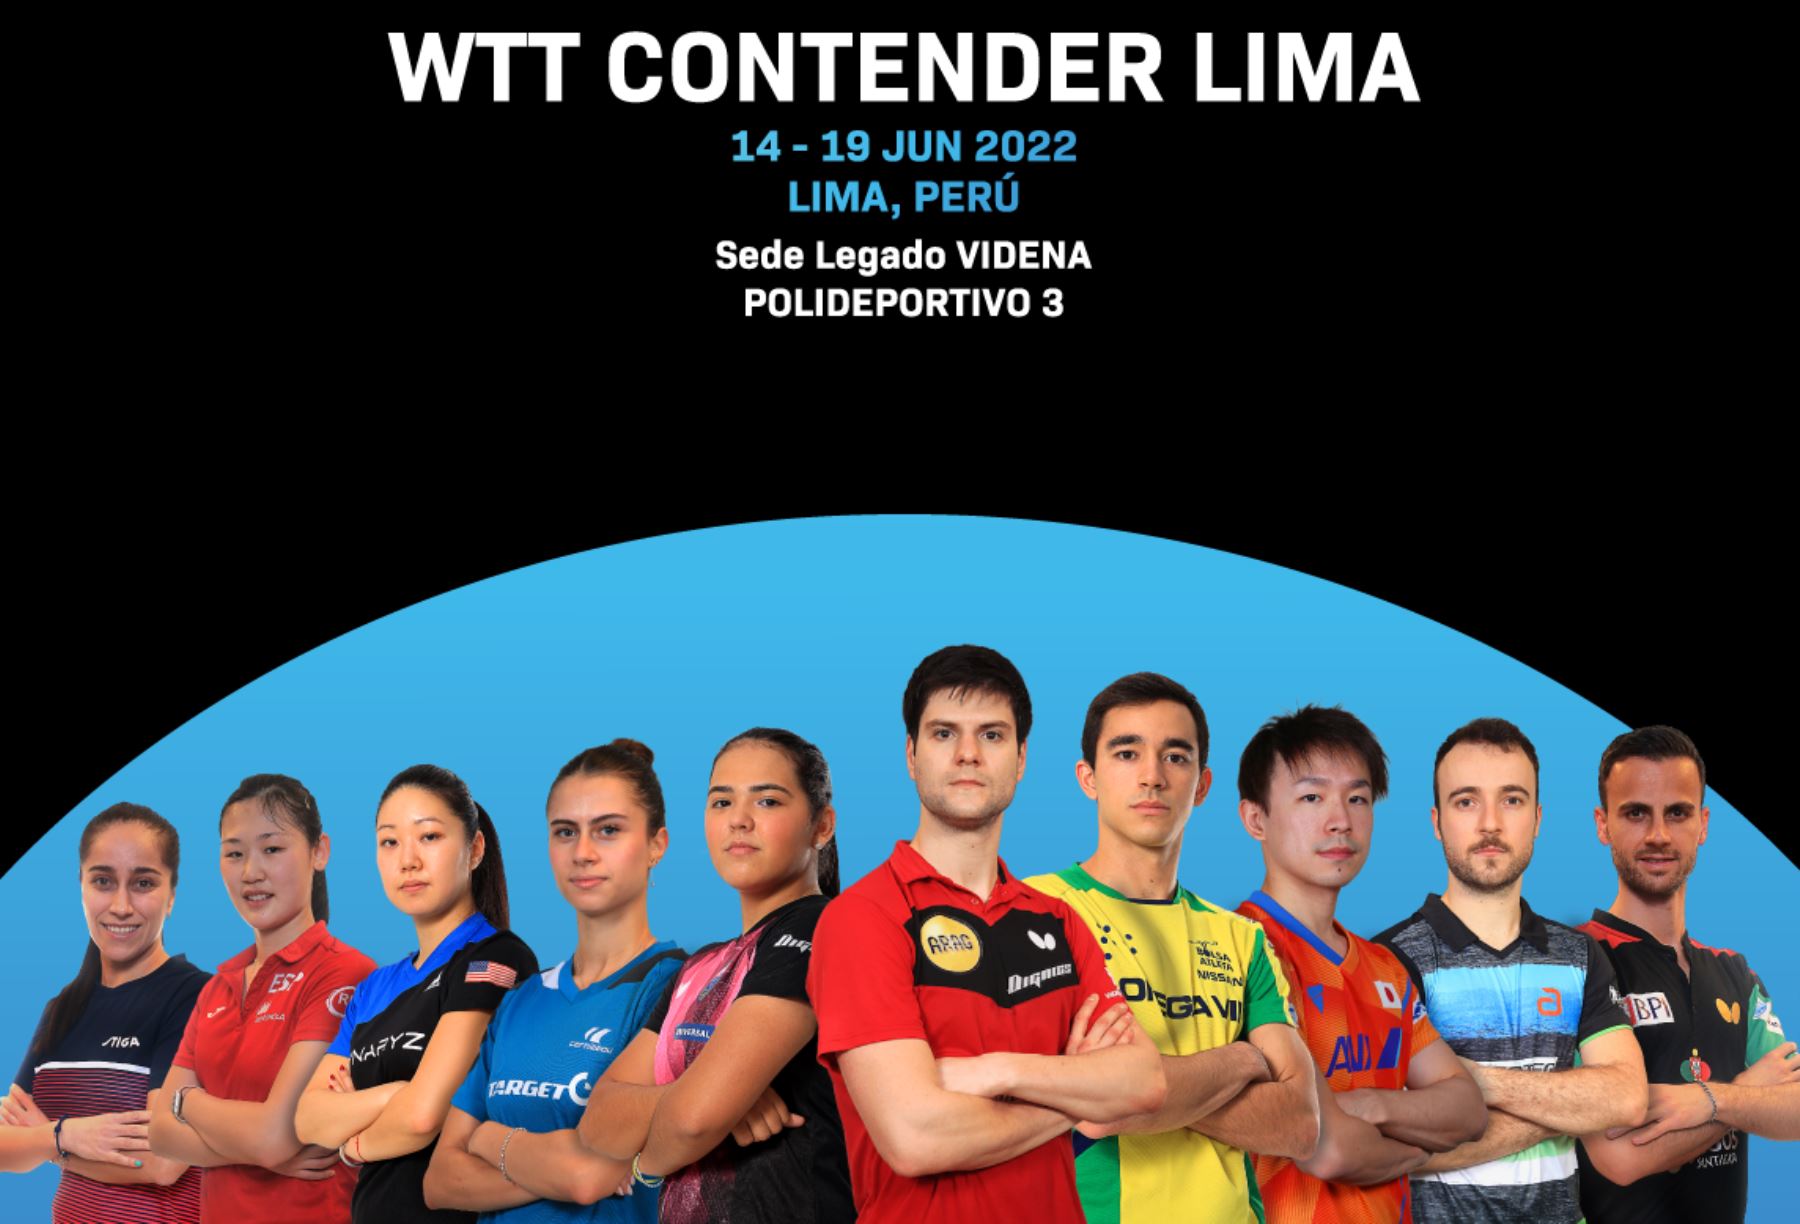 Tenis de mesa: los mejores del mundo competirán hoy en el “WTT Contender Lima”